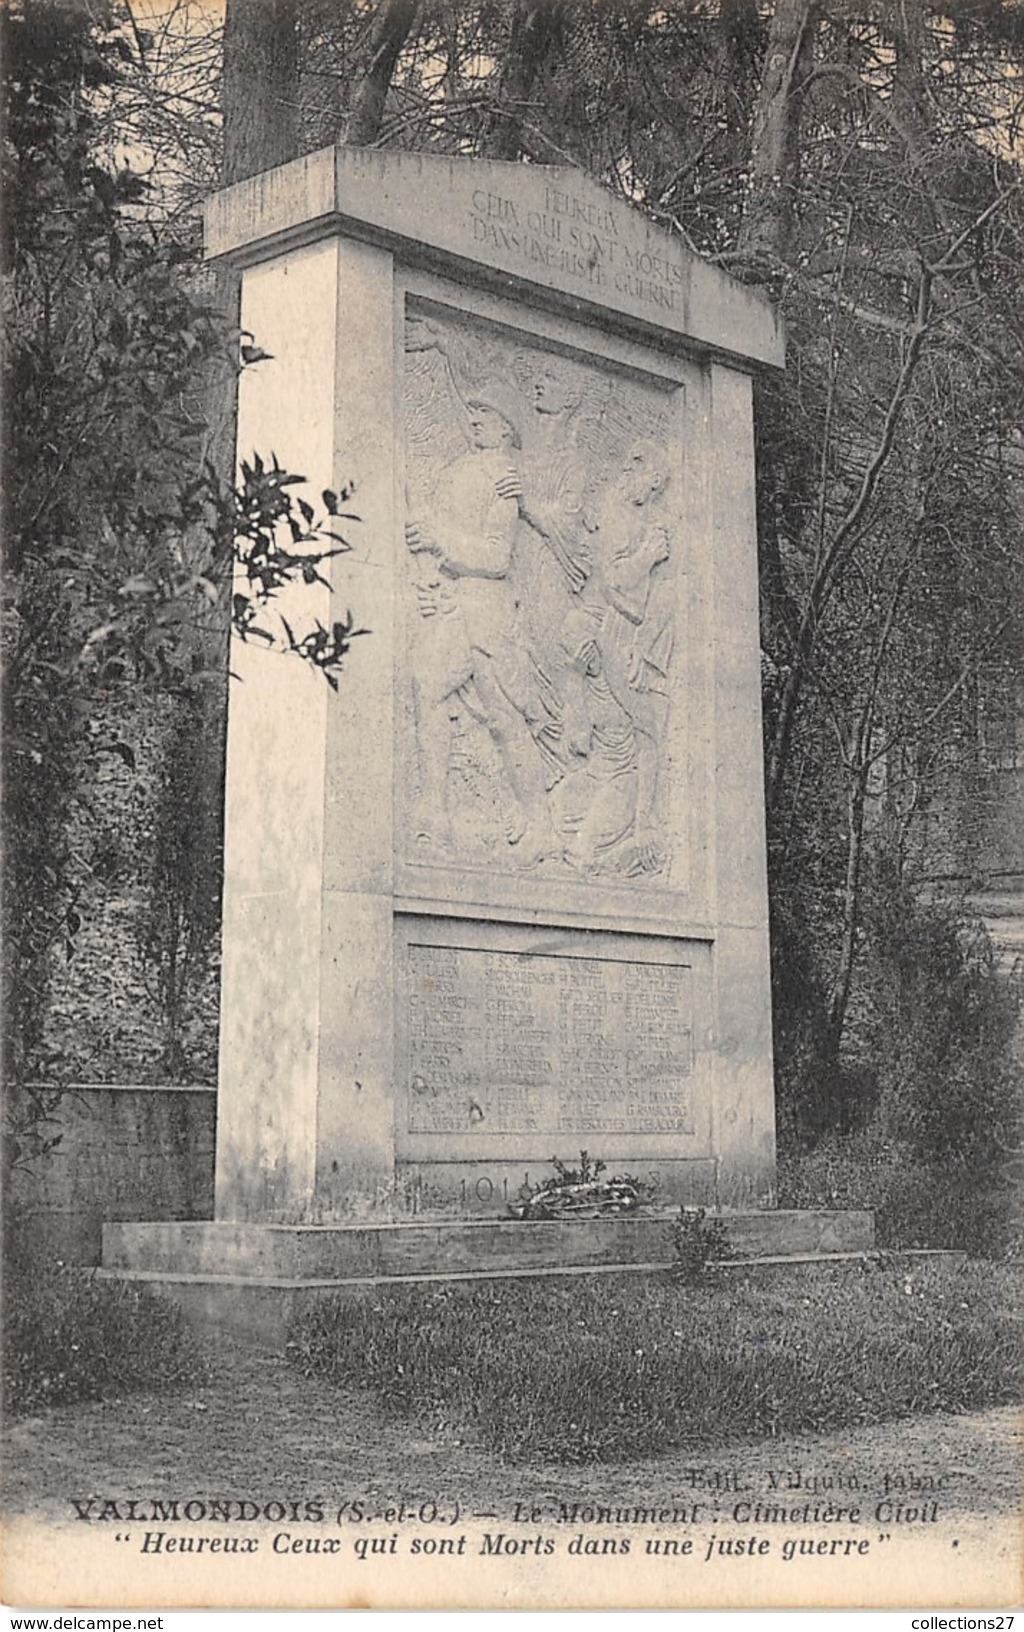 95-VALMONDOIS- LE MONUMENT CIMETIERE CIVIL " HEUREUX CEUX QUI SONT MORTS DANS UNE JUSTE GUERRE " - Valmondois